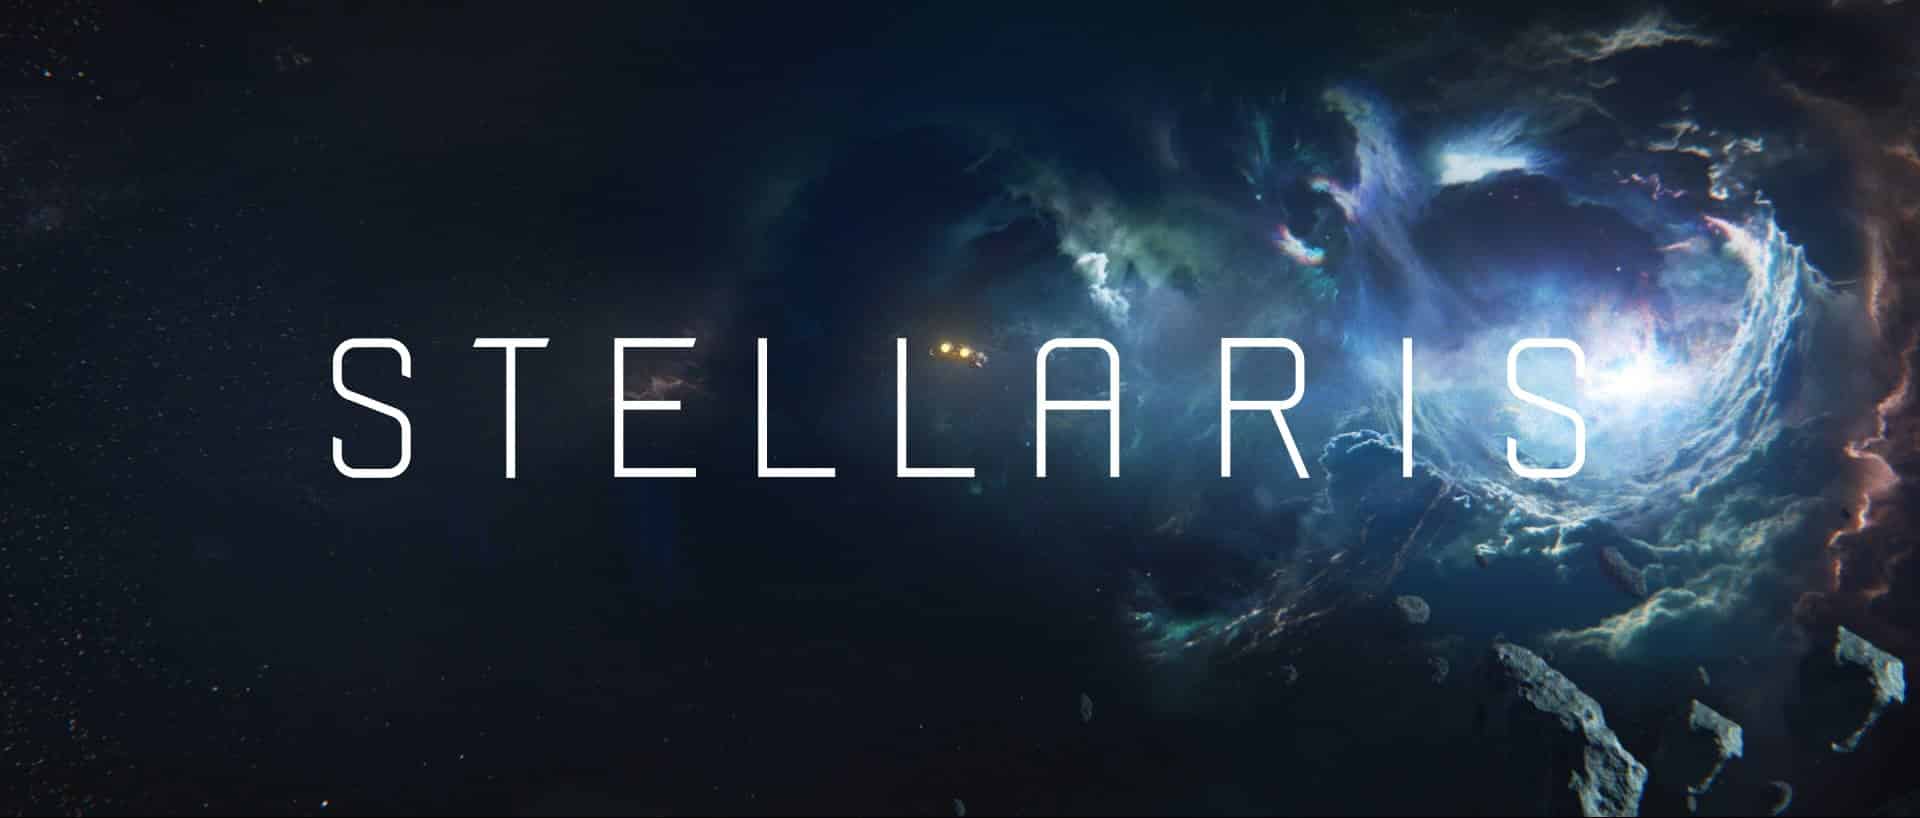 stellaris gratis epic games